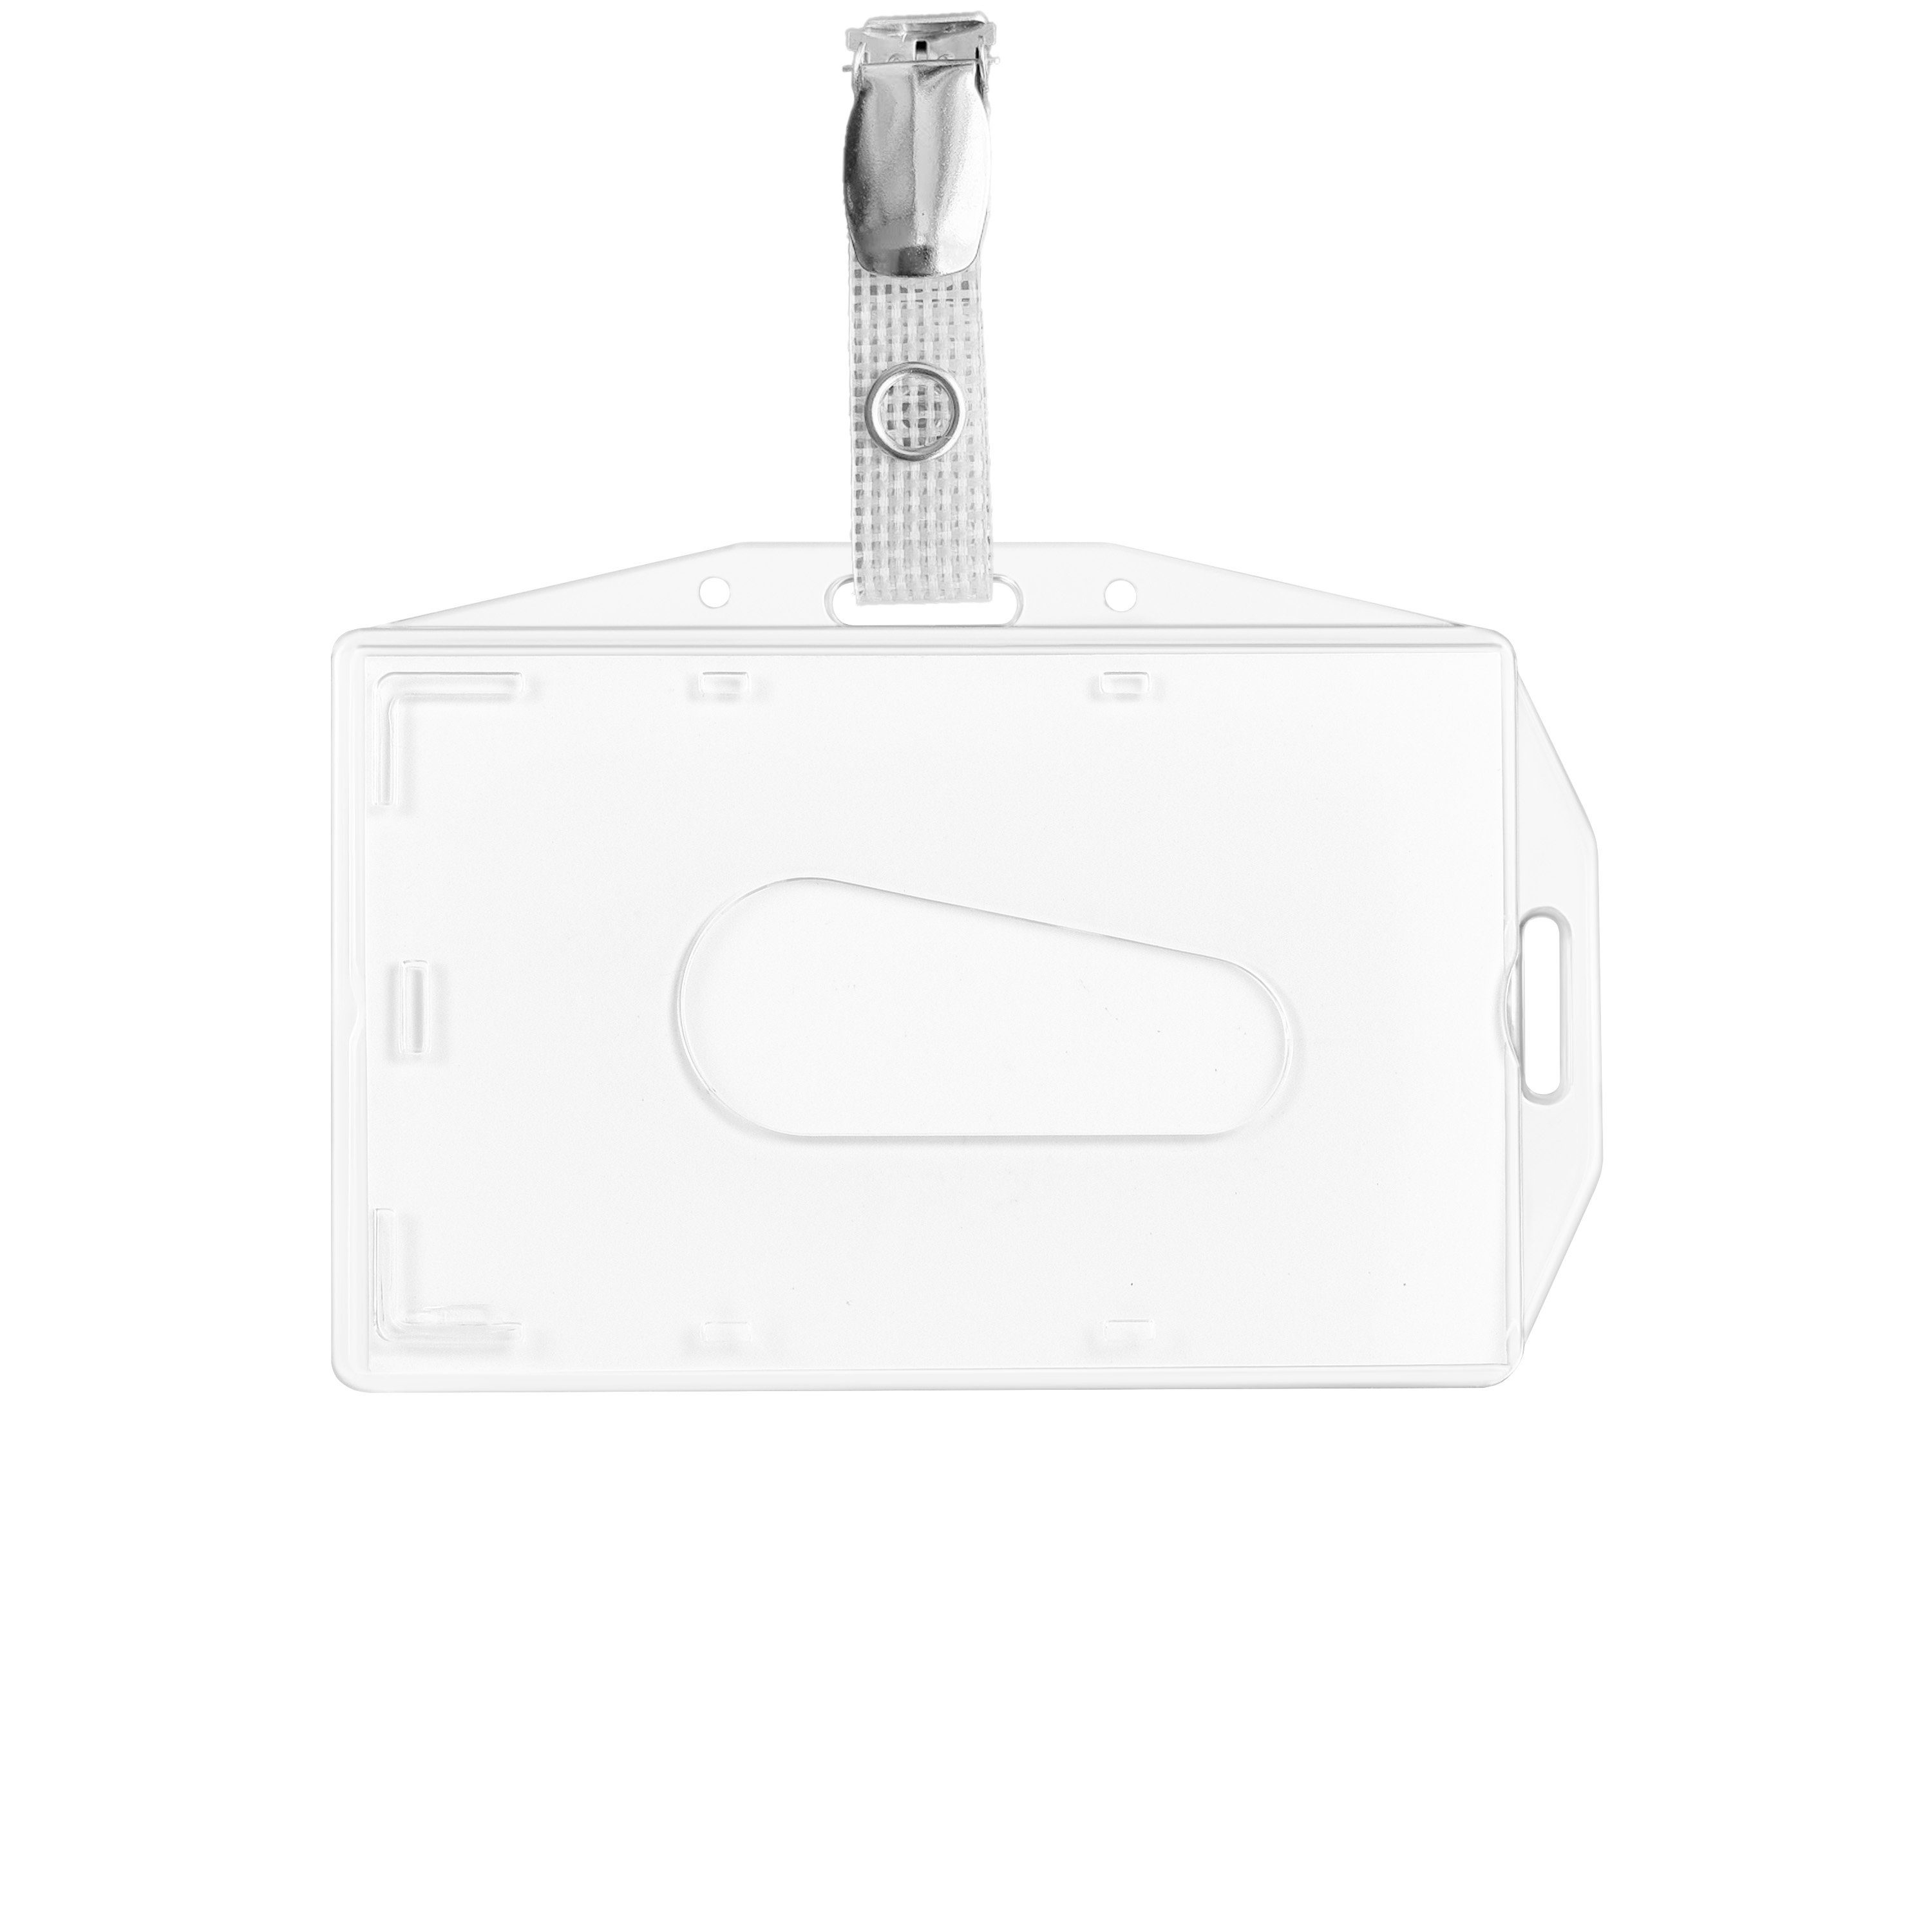 WEBBOMB Schlüsselanhänger 5x Ausweishalter Kartenhalter Use Clip Dual u vertikal horizontal 5x 